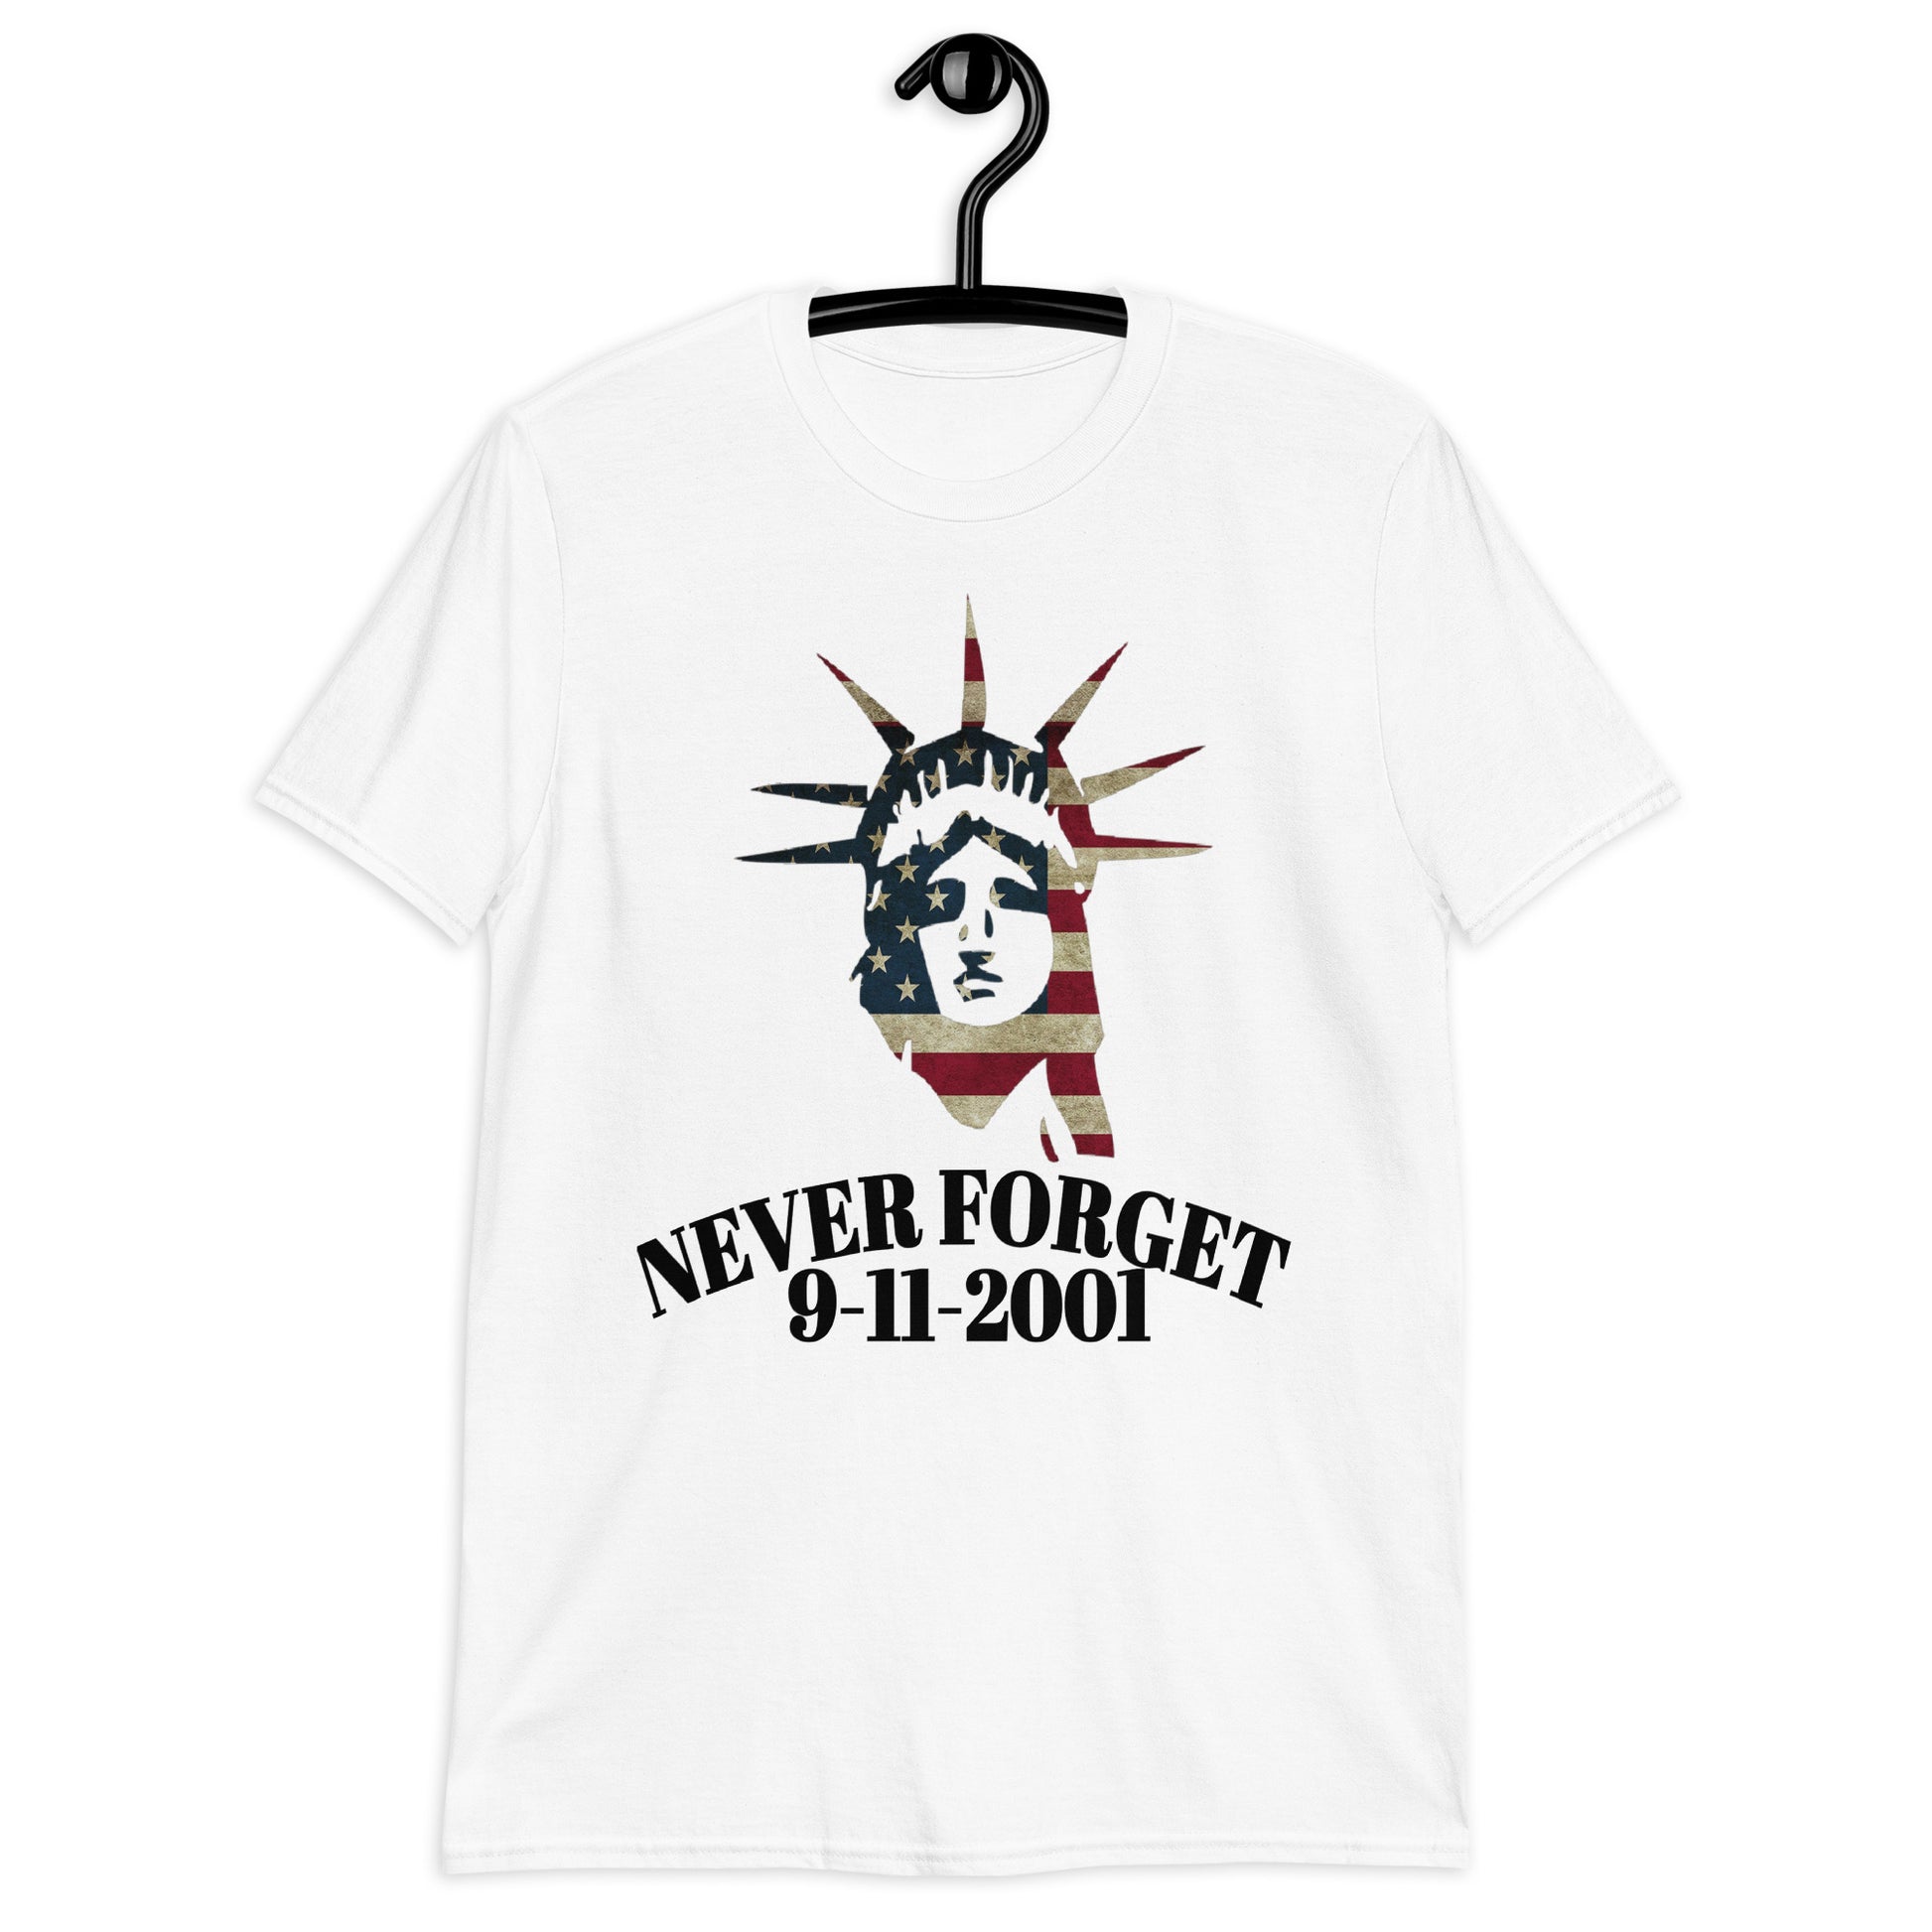 Never Forget t-shirt / September 11-2001 t-shirt / September 11 Shirt